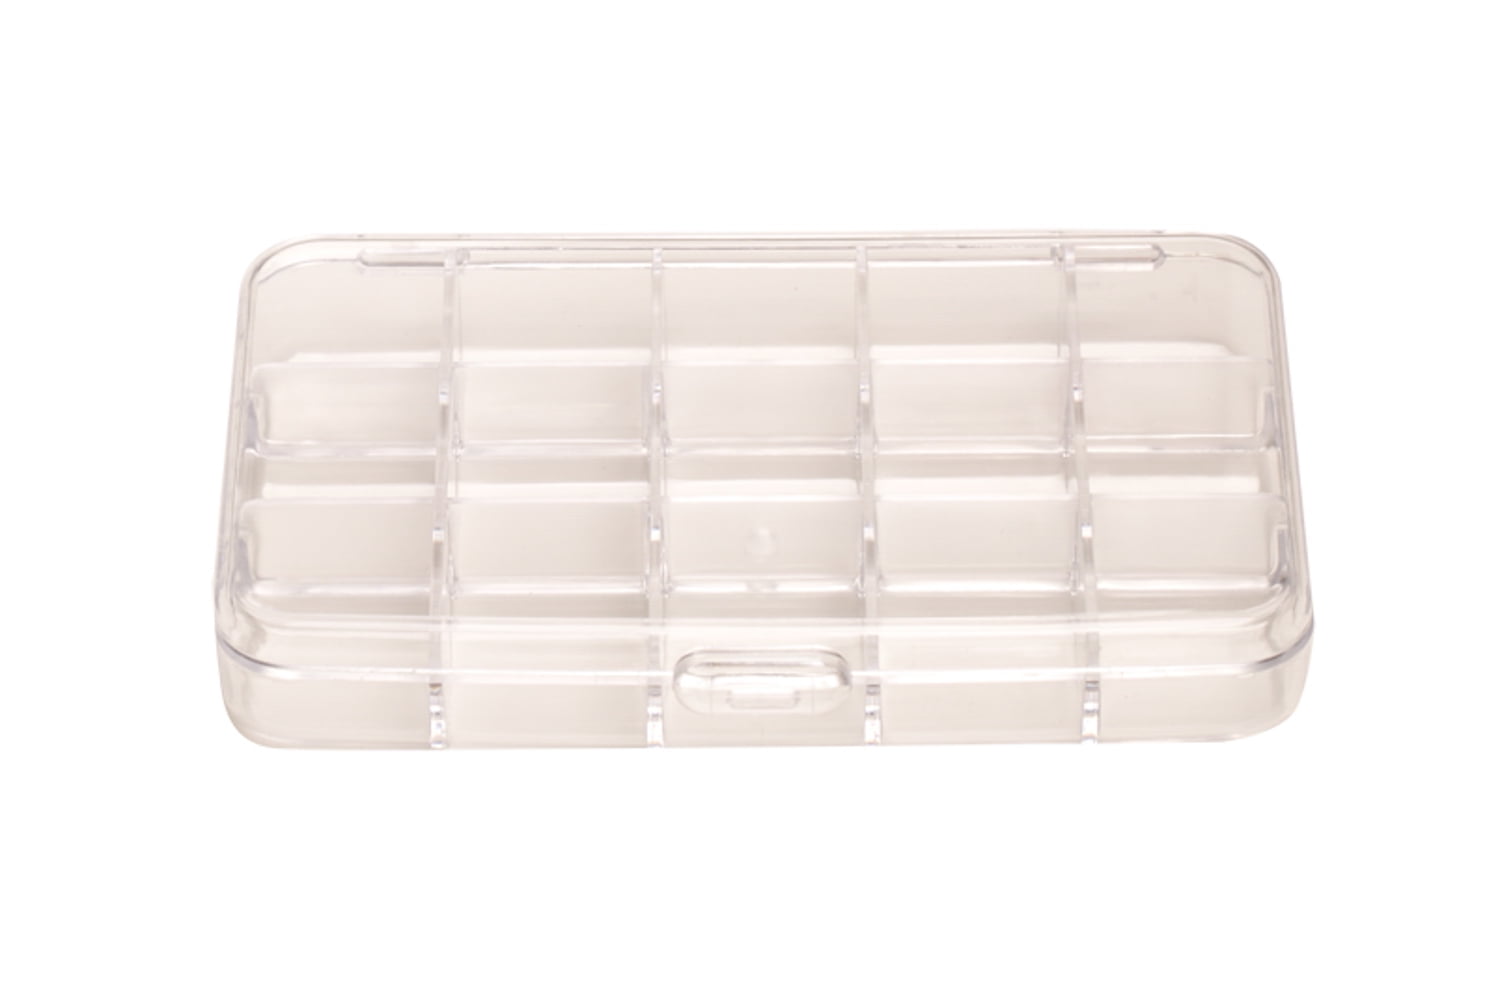 1Pcs 10 Compartments Detachable Organizer Storage Plastic Case Box With Lid 